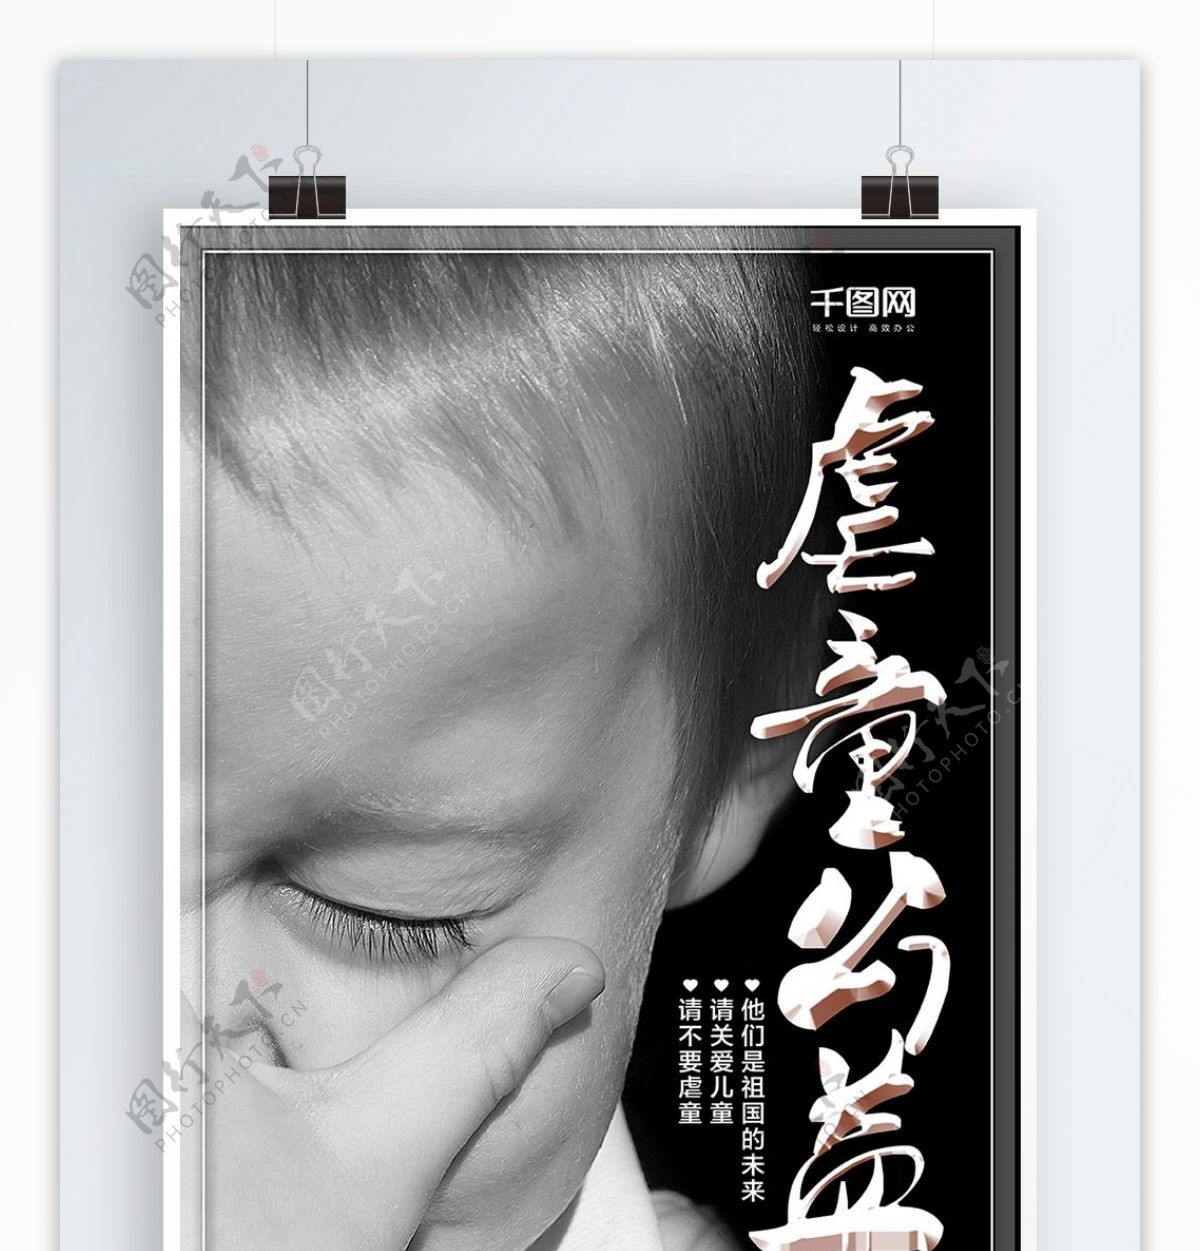 虐童公益关爱儿童海报设计